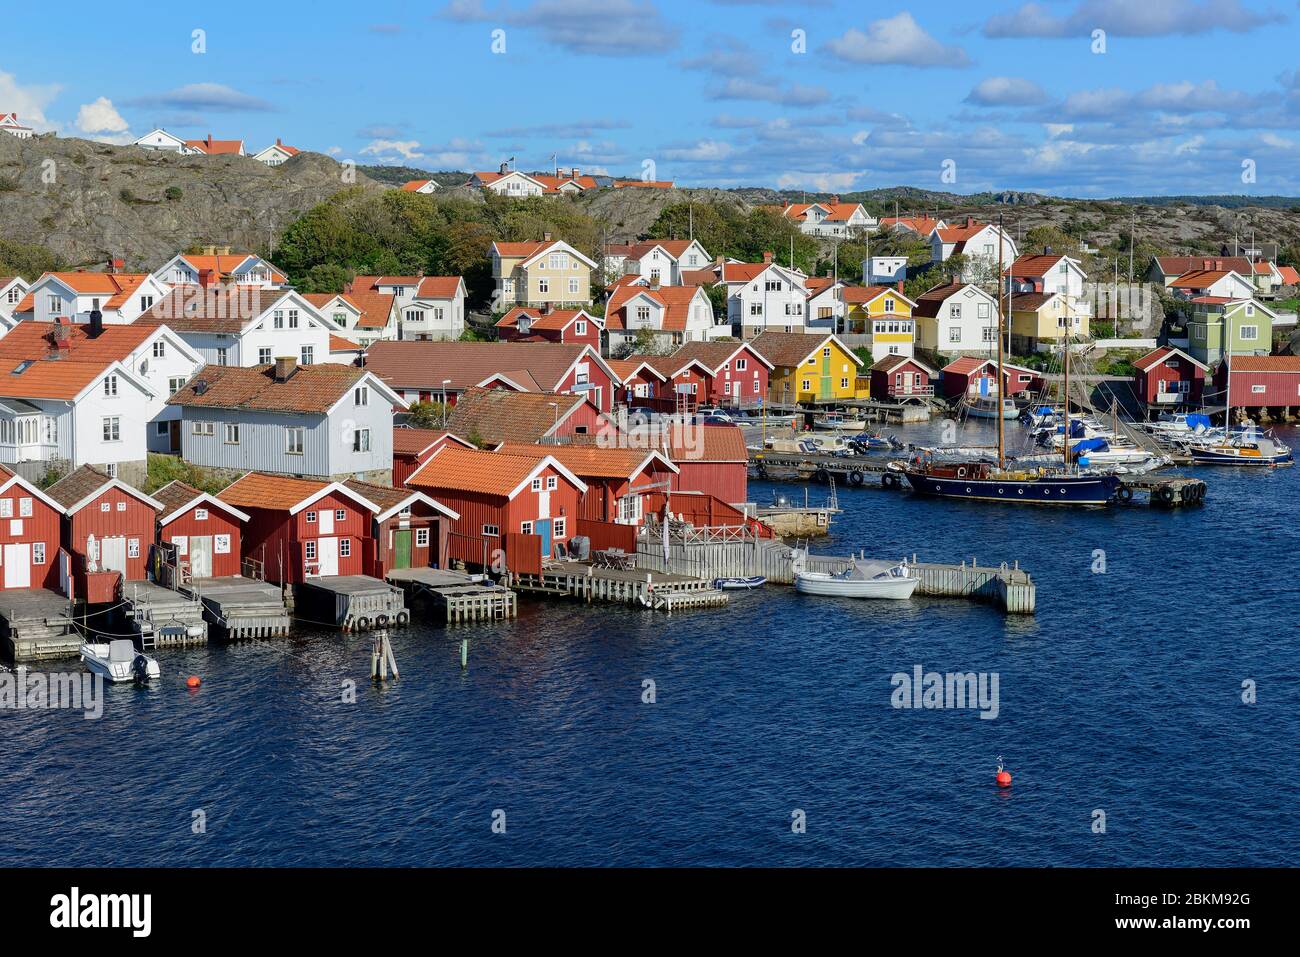 Falu red fishermen's houses in harbour, Orust, Hälleviksstrand, Bohuslän, Sweden Stock Photo